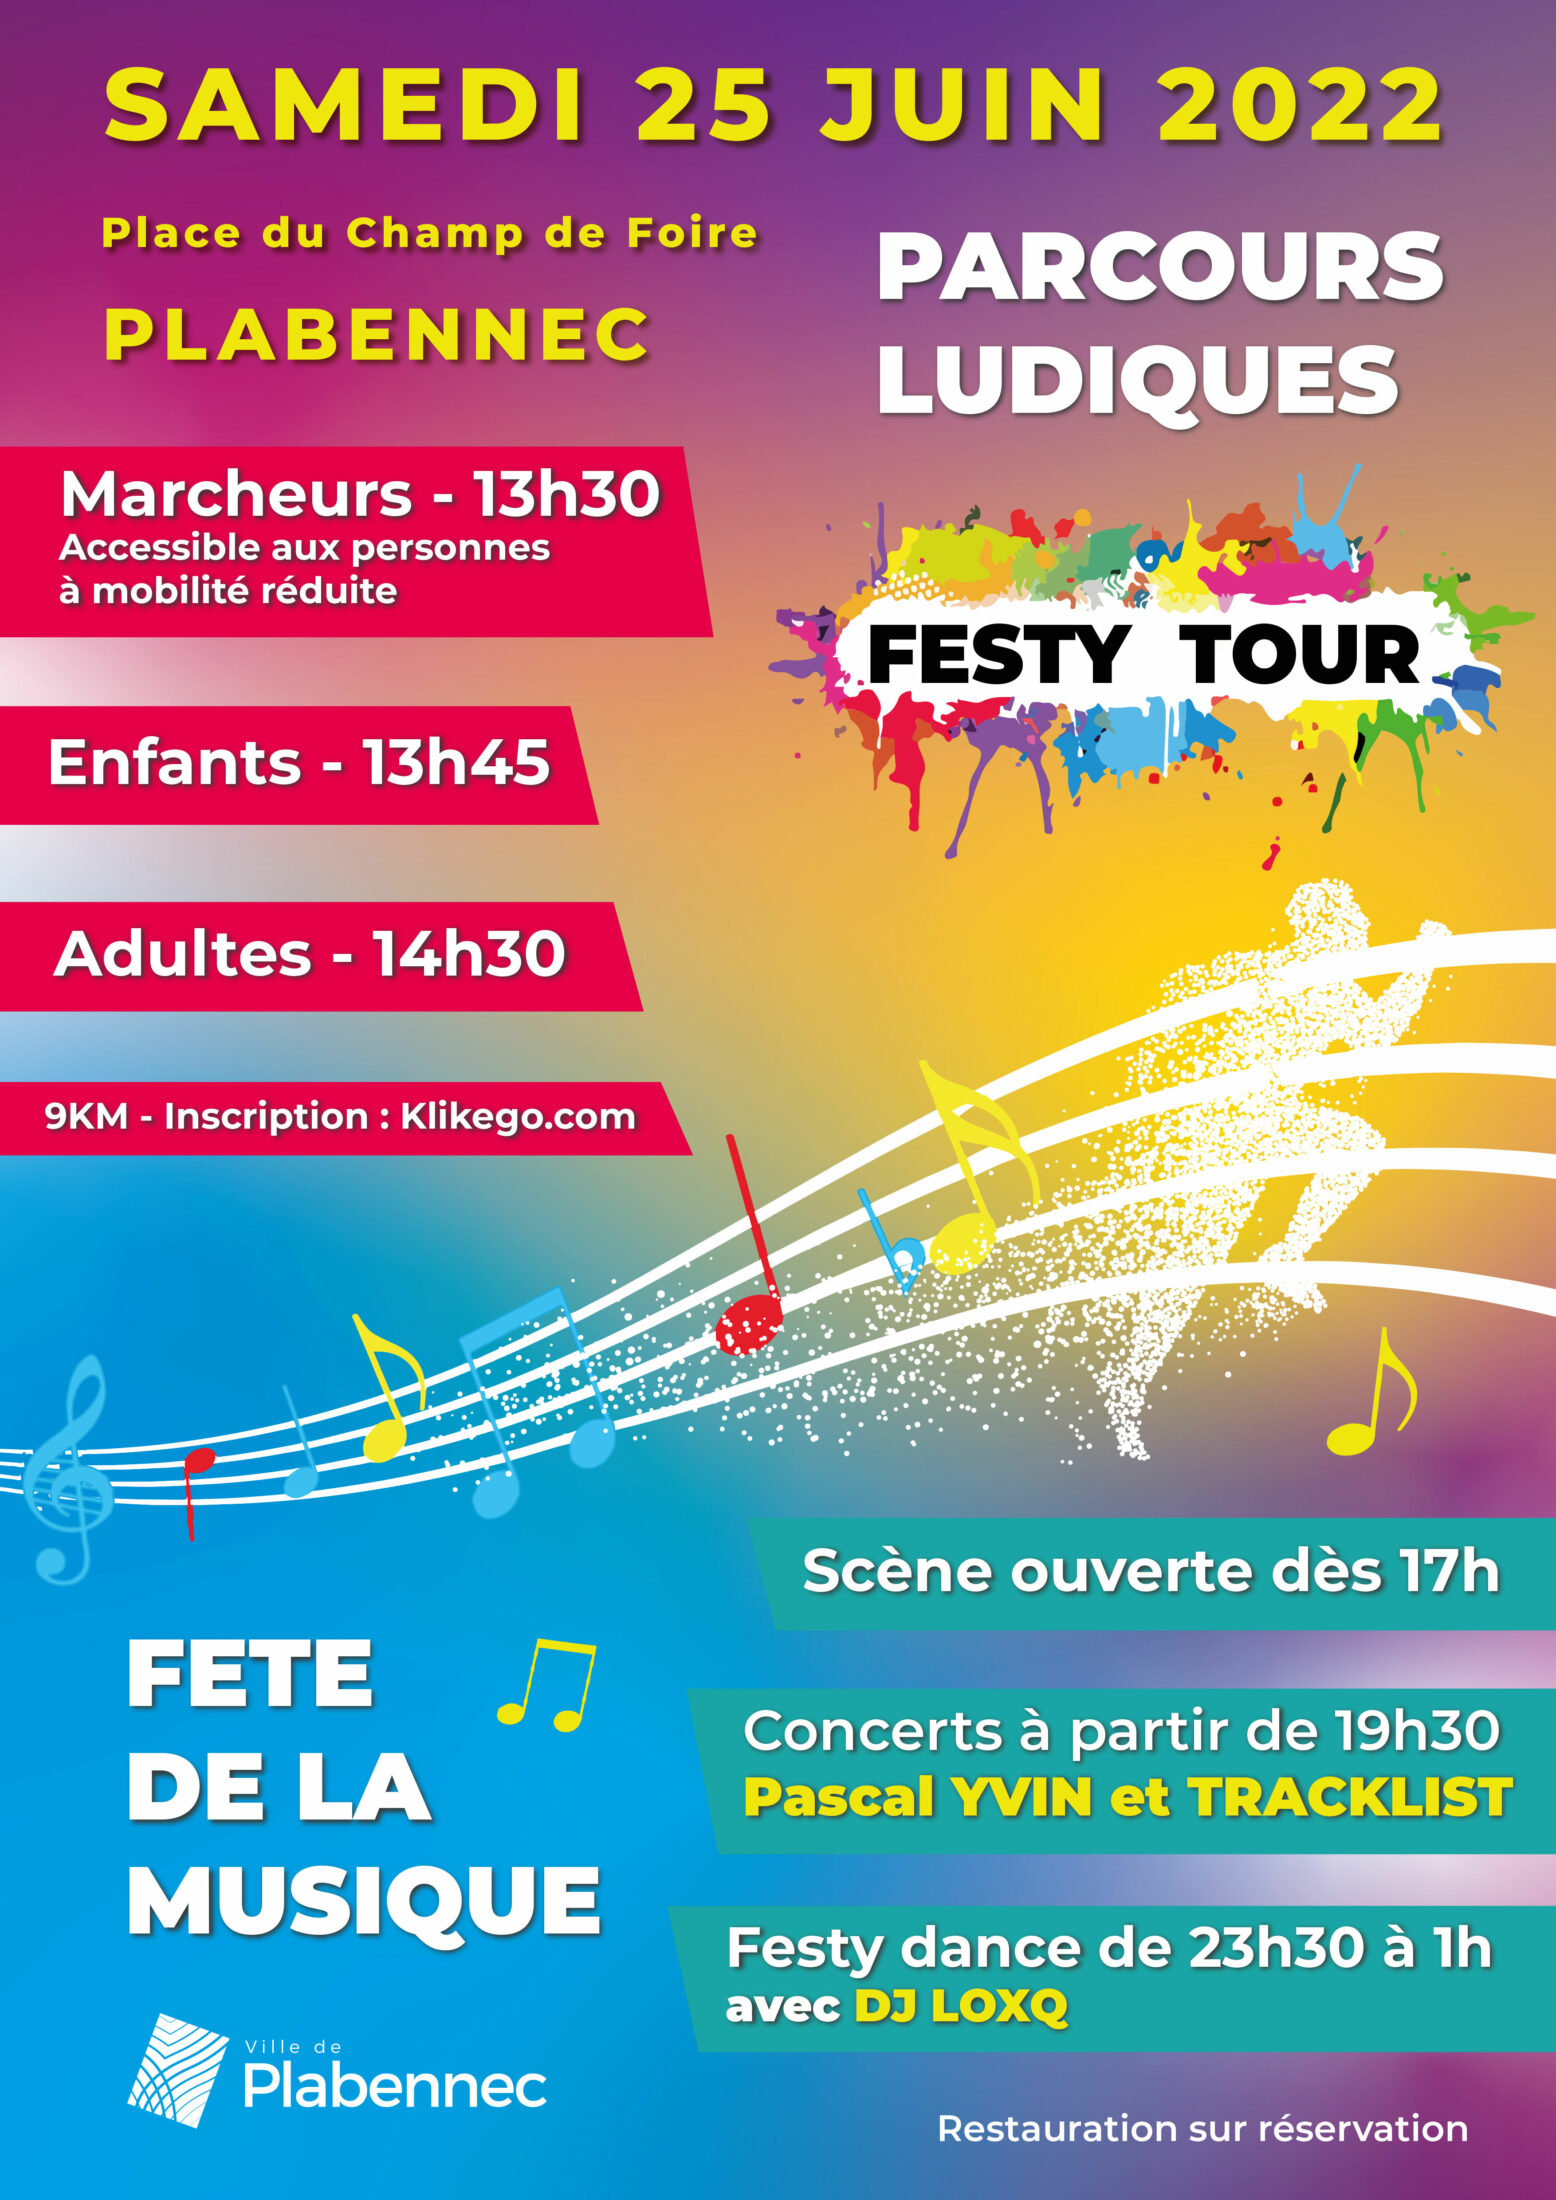 Samedi 25 juin 2022 : Festy Tour (Festy Plab) et Fête de la musique ...